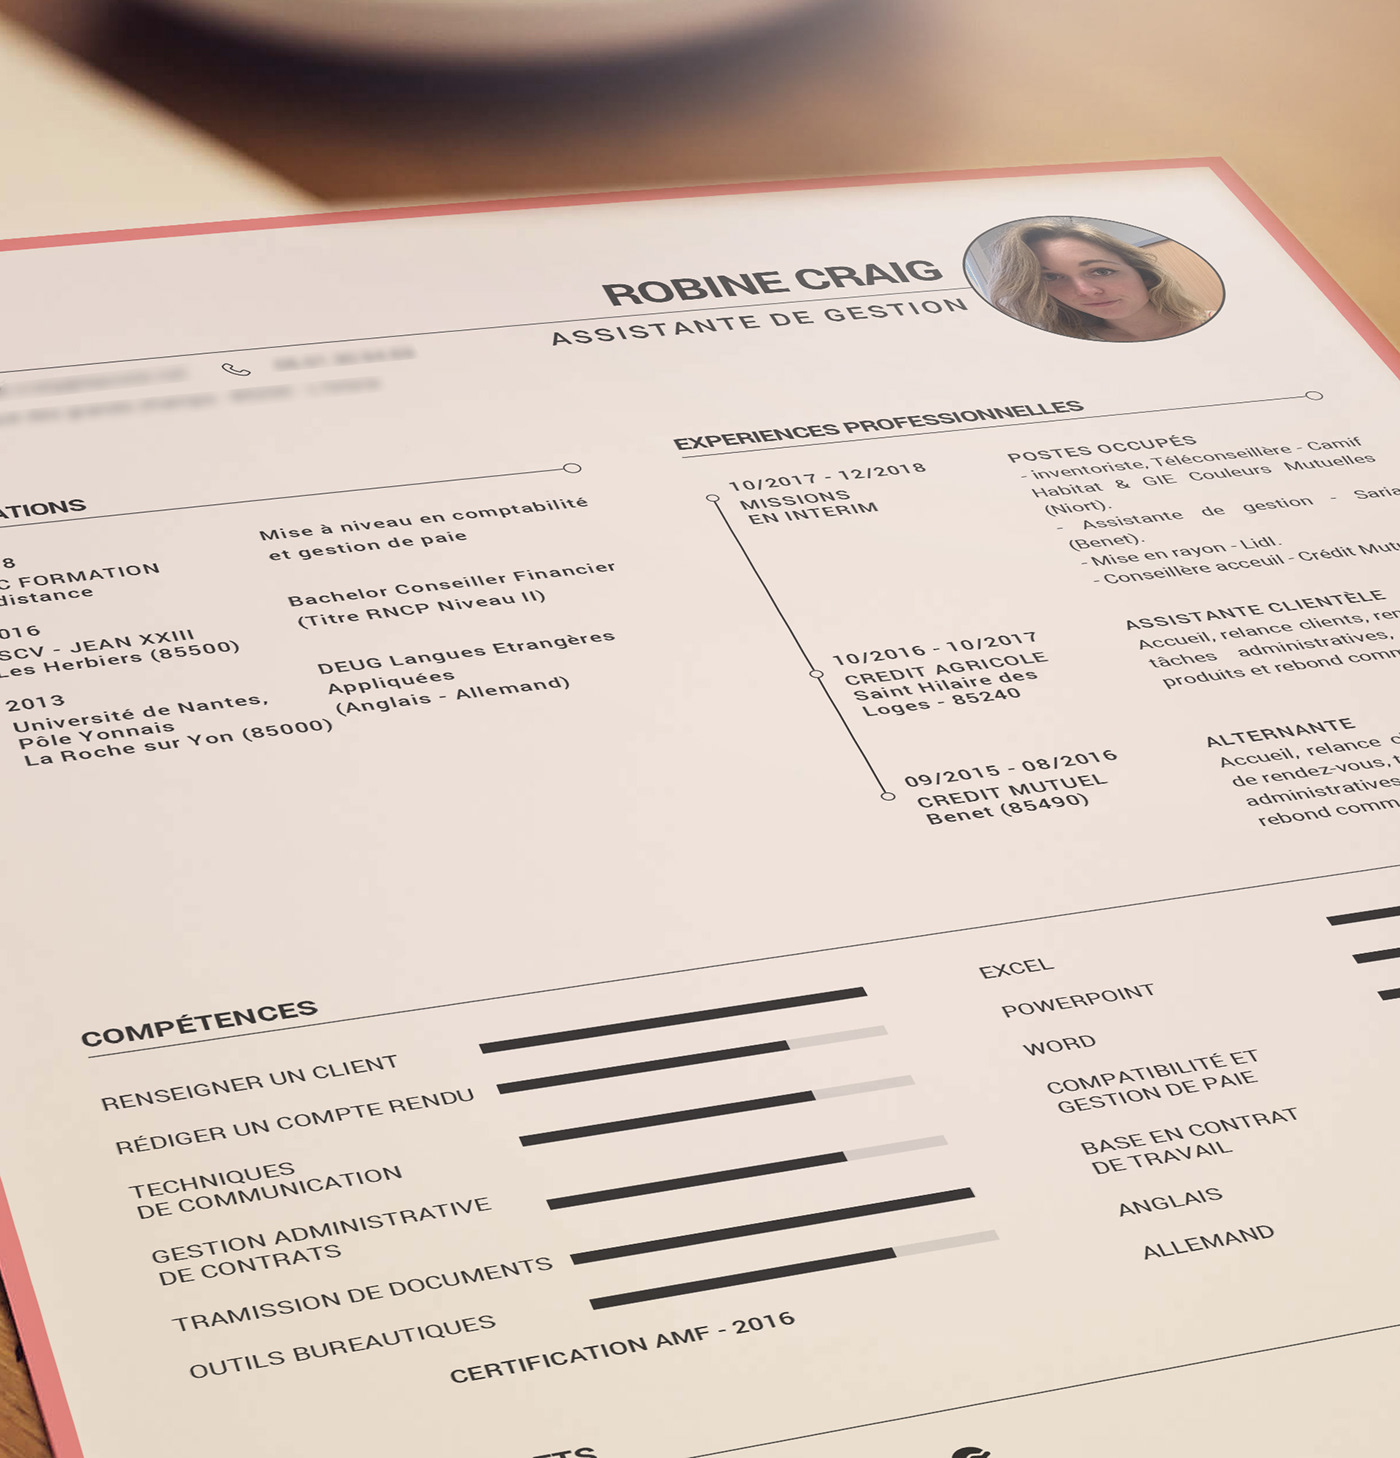 Curriculum Vitae CV curriculum visual identity Resume type design personal branding